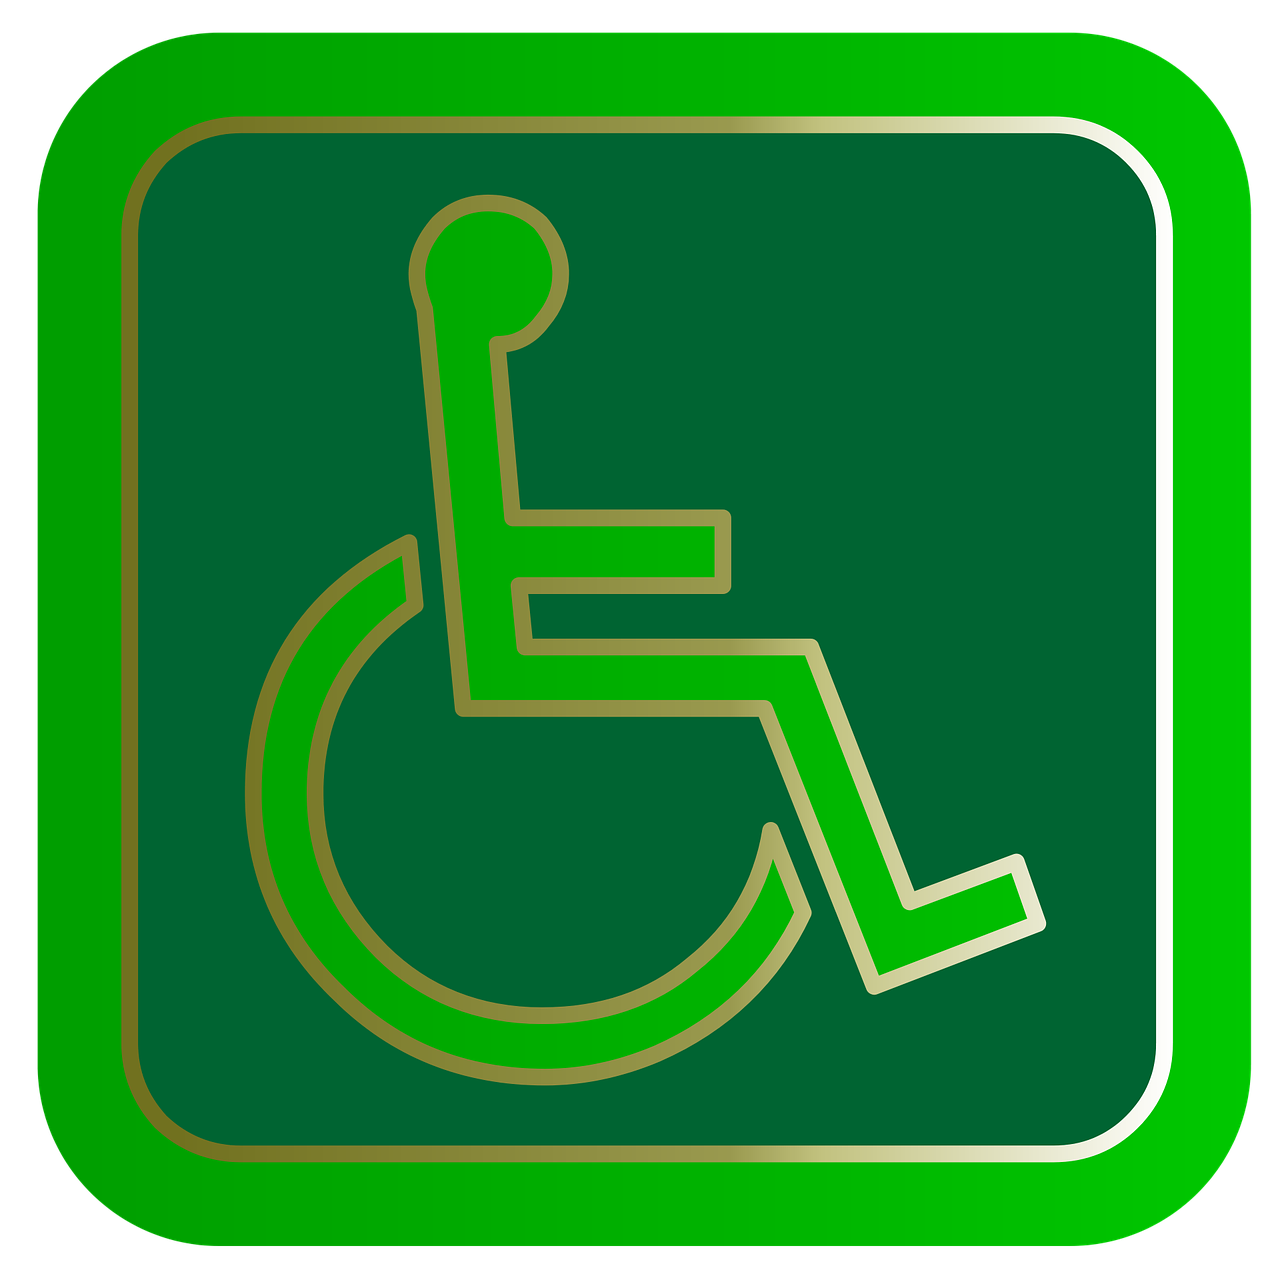 Woonlocatie Dorpszicht Gemiva - SVG Groep Ervaren instelling gehandicaptenzorg verstandelijk gehandicapten